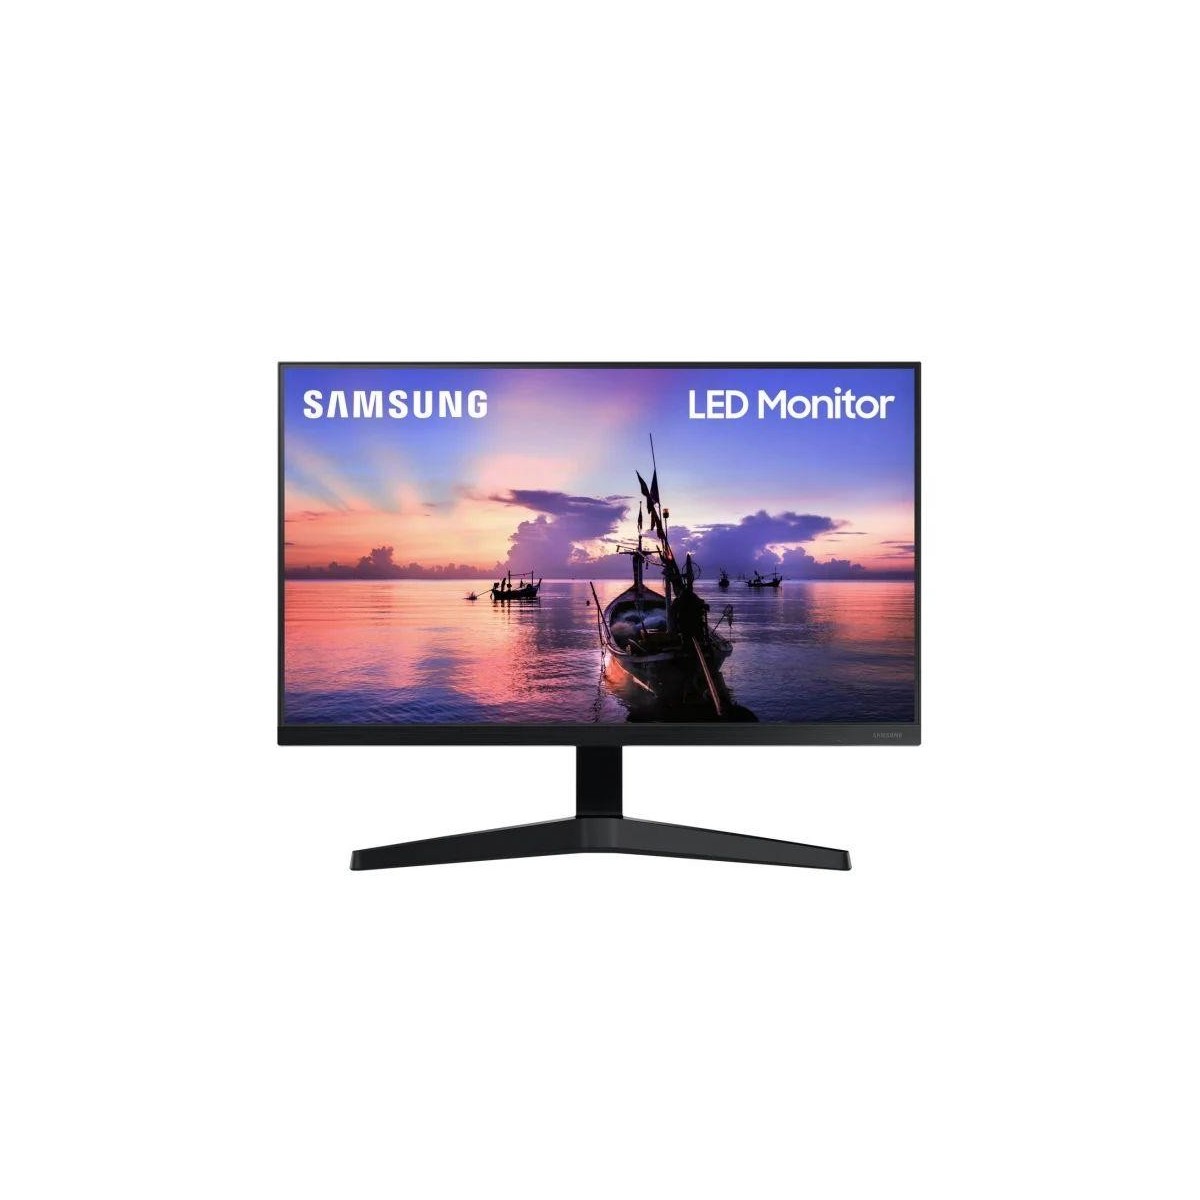 Samsung F24T350FHR - 61 cm (24) - 1920 x 1080 pixels - Full HD - 5 ms - Black